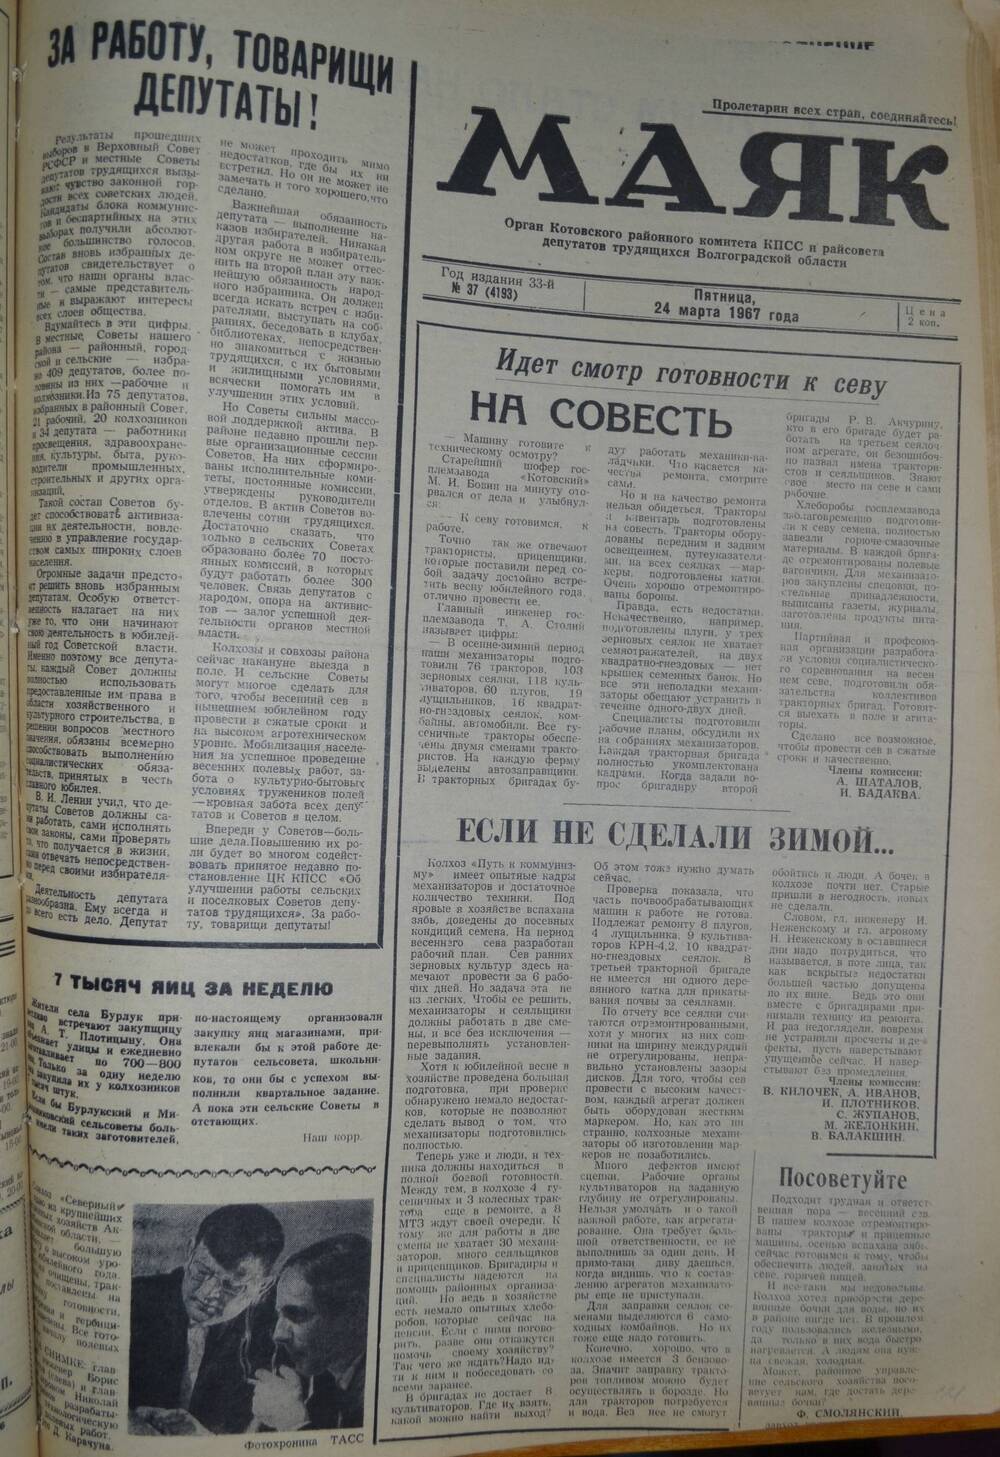 Газета Маяк № 37 (4193). Пятница, 24 марта 1967 года.